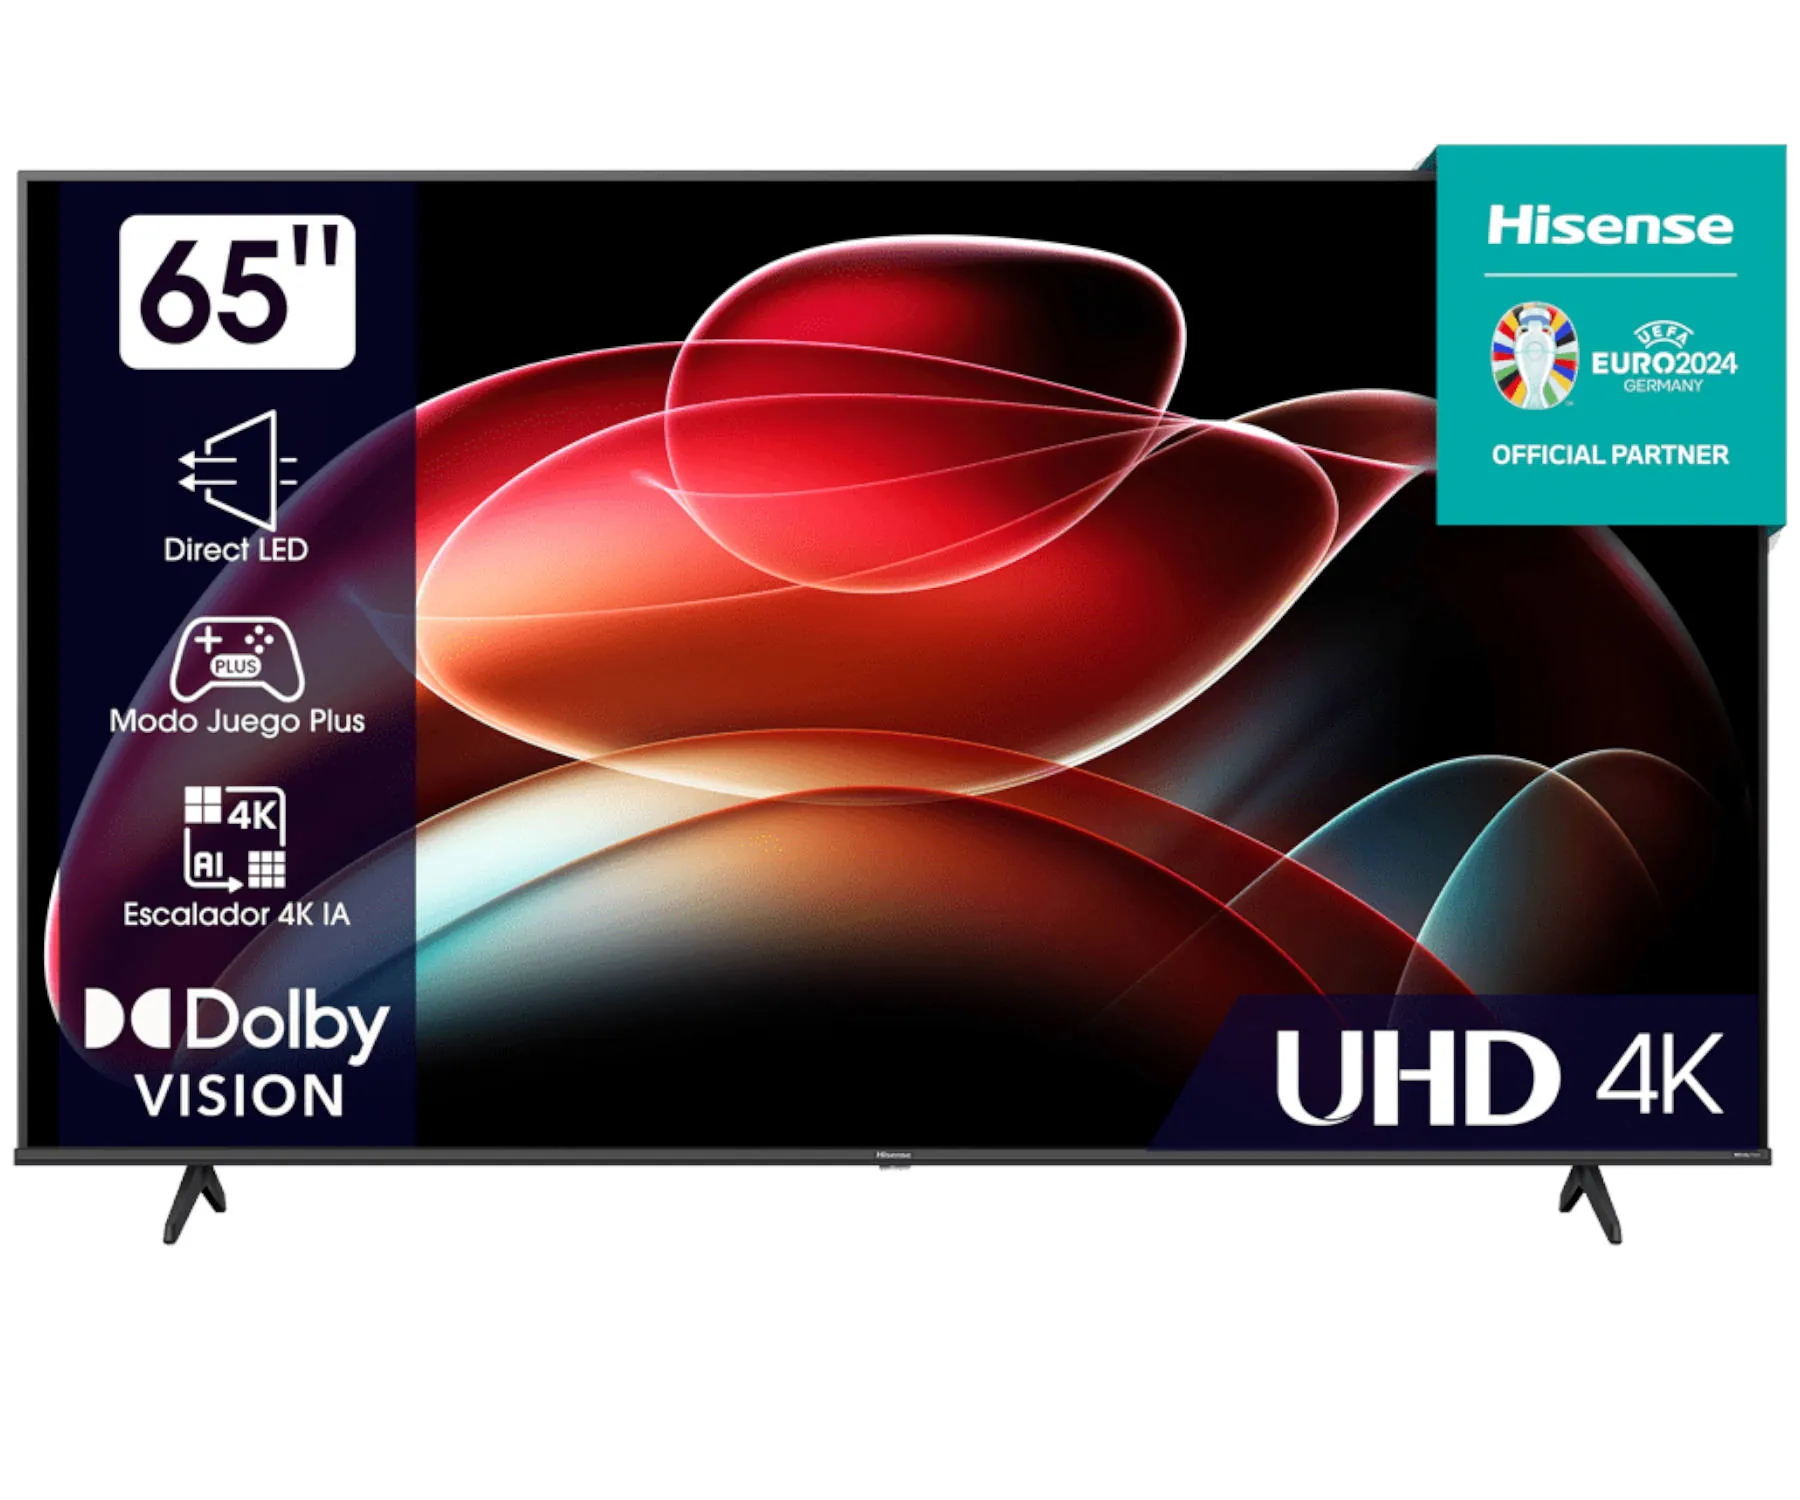 Hisense 65A6K / Televisor Smart TV 65 Direct LED Full HD